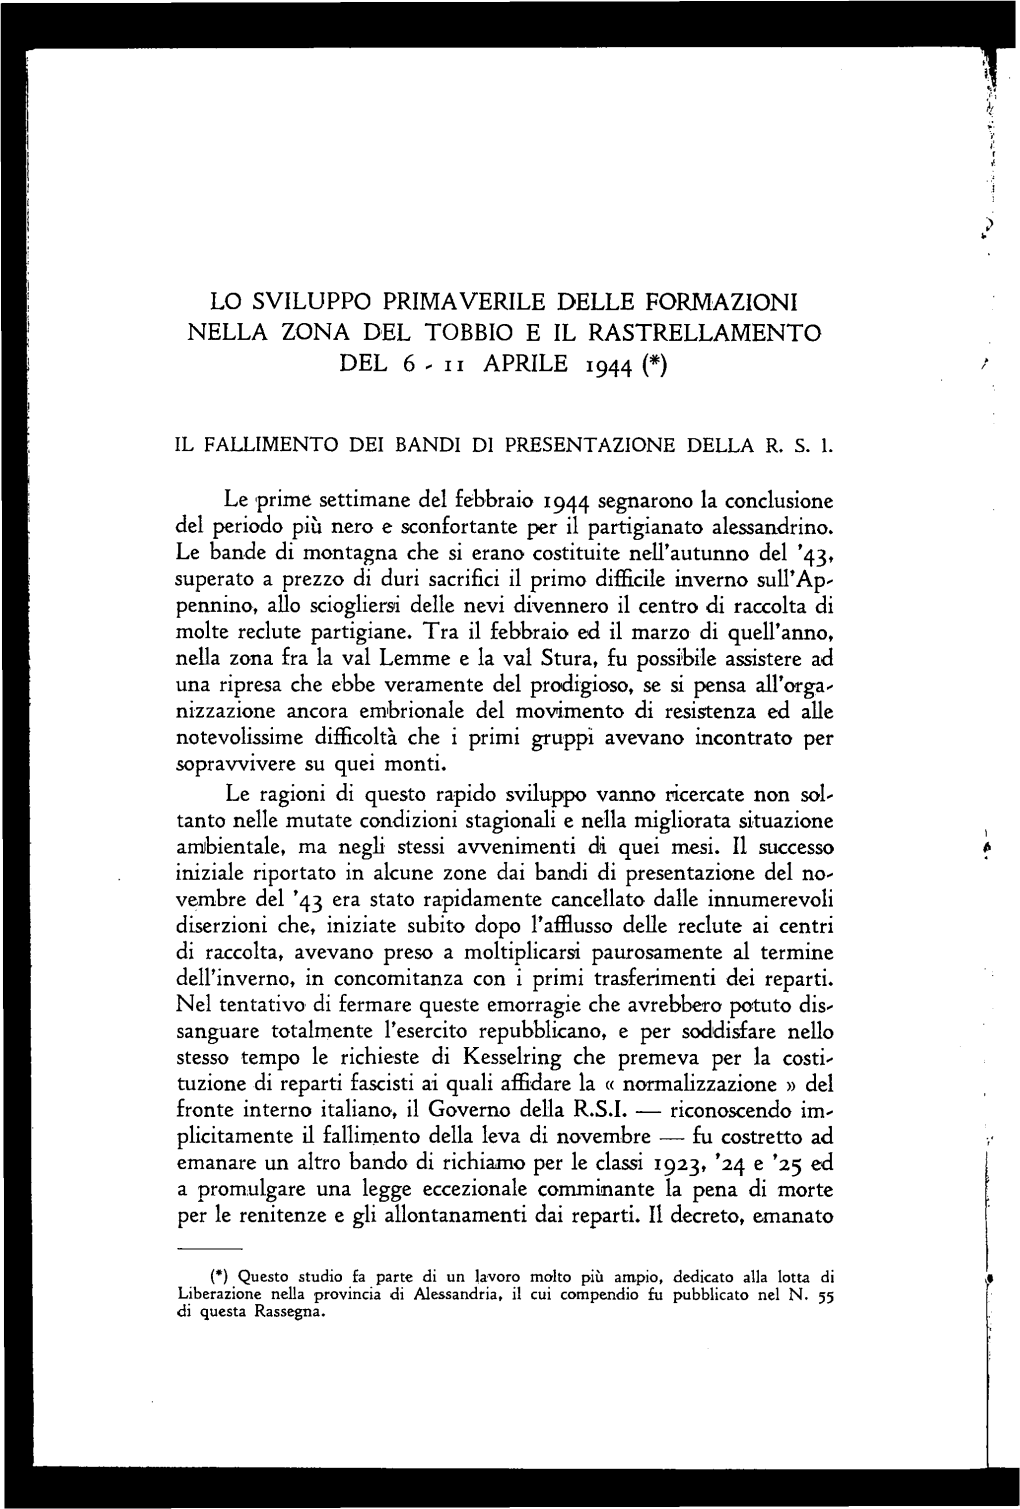 Lo Sviluppo Primaverile Delle Formazioni Nella Zona Del Tobbio E Il Rastrellamento D El 6 - I I a Pr Ile 1944 (*)